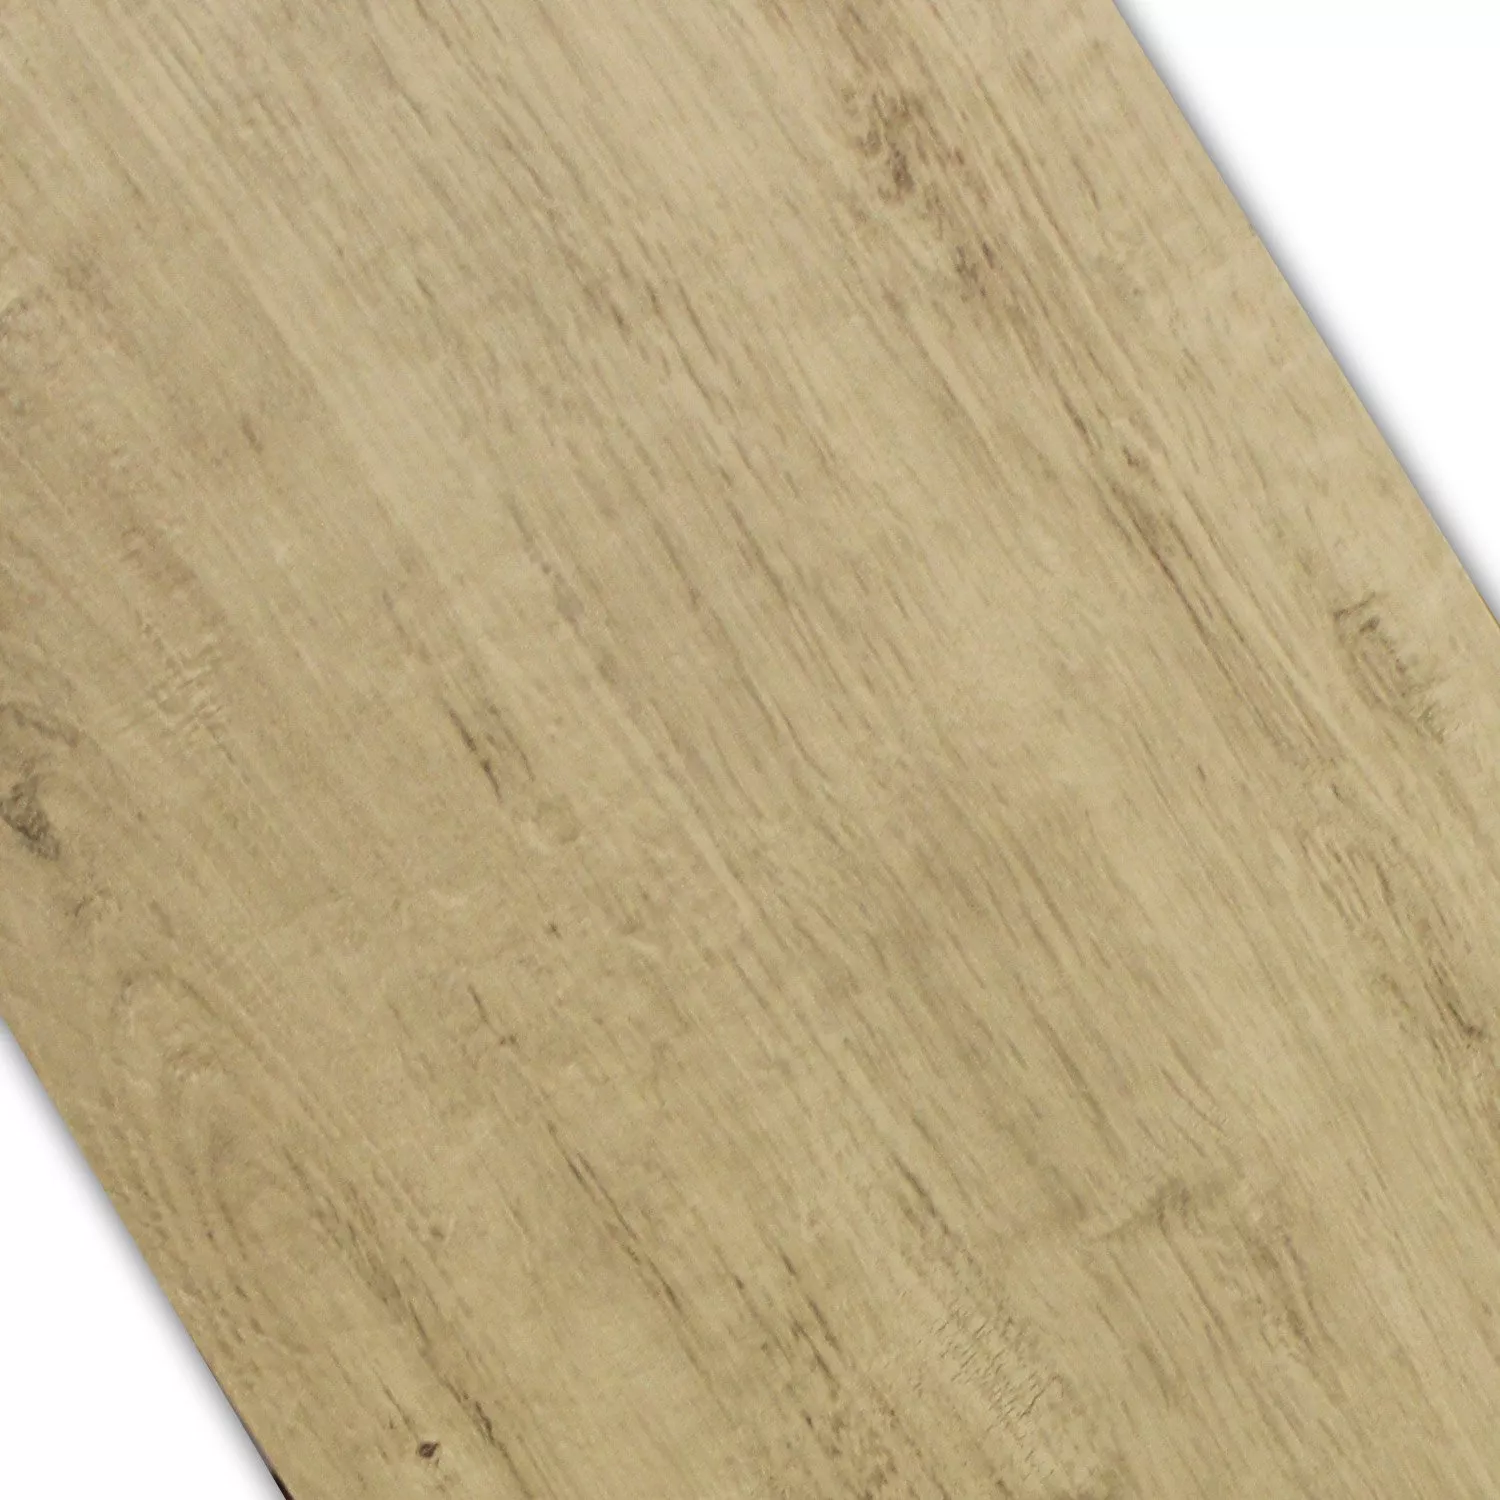 Marazzi TreverkHome Płytki Podłogowe Wygląd Drewna Olmo Rett MKLH 15x120cm